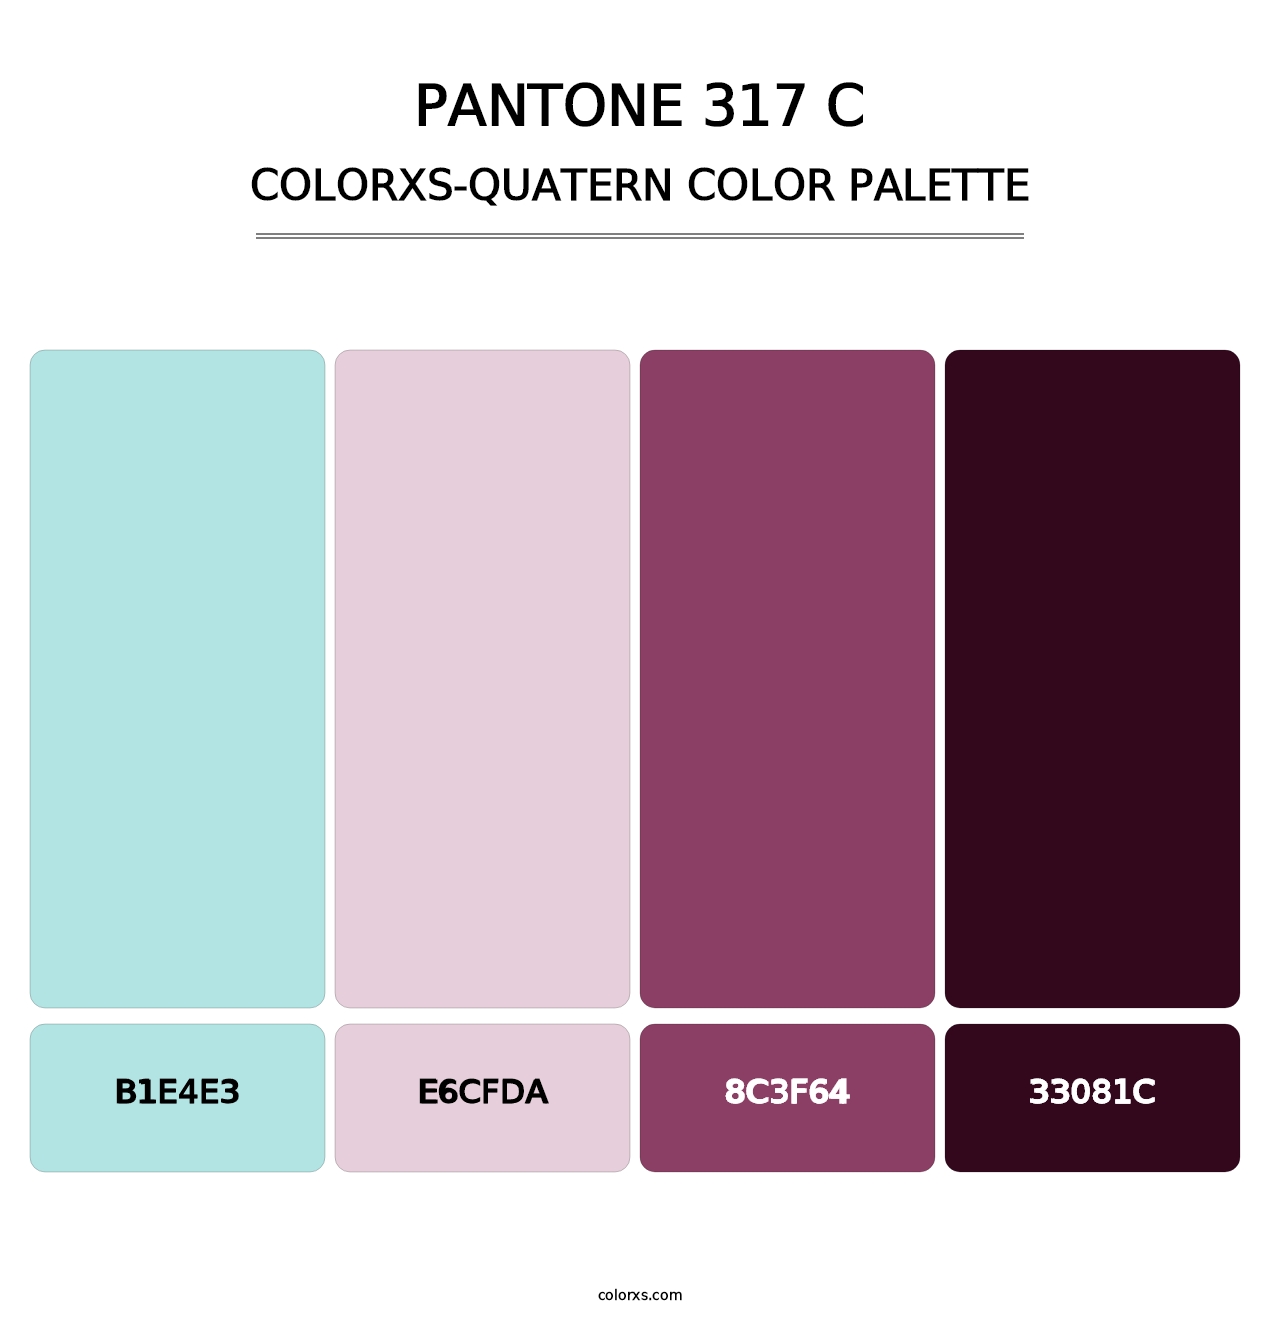 PANTONE 317 C - Colorxs Quatern Palette